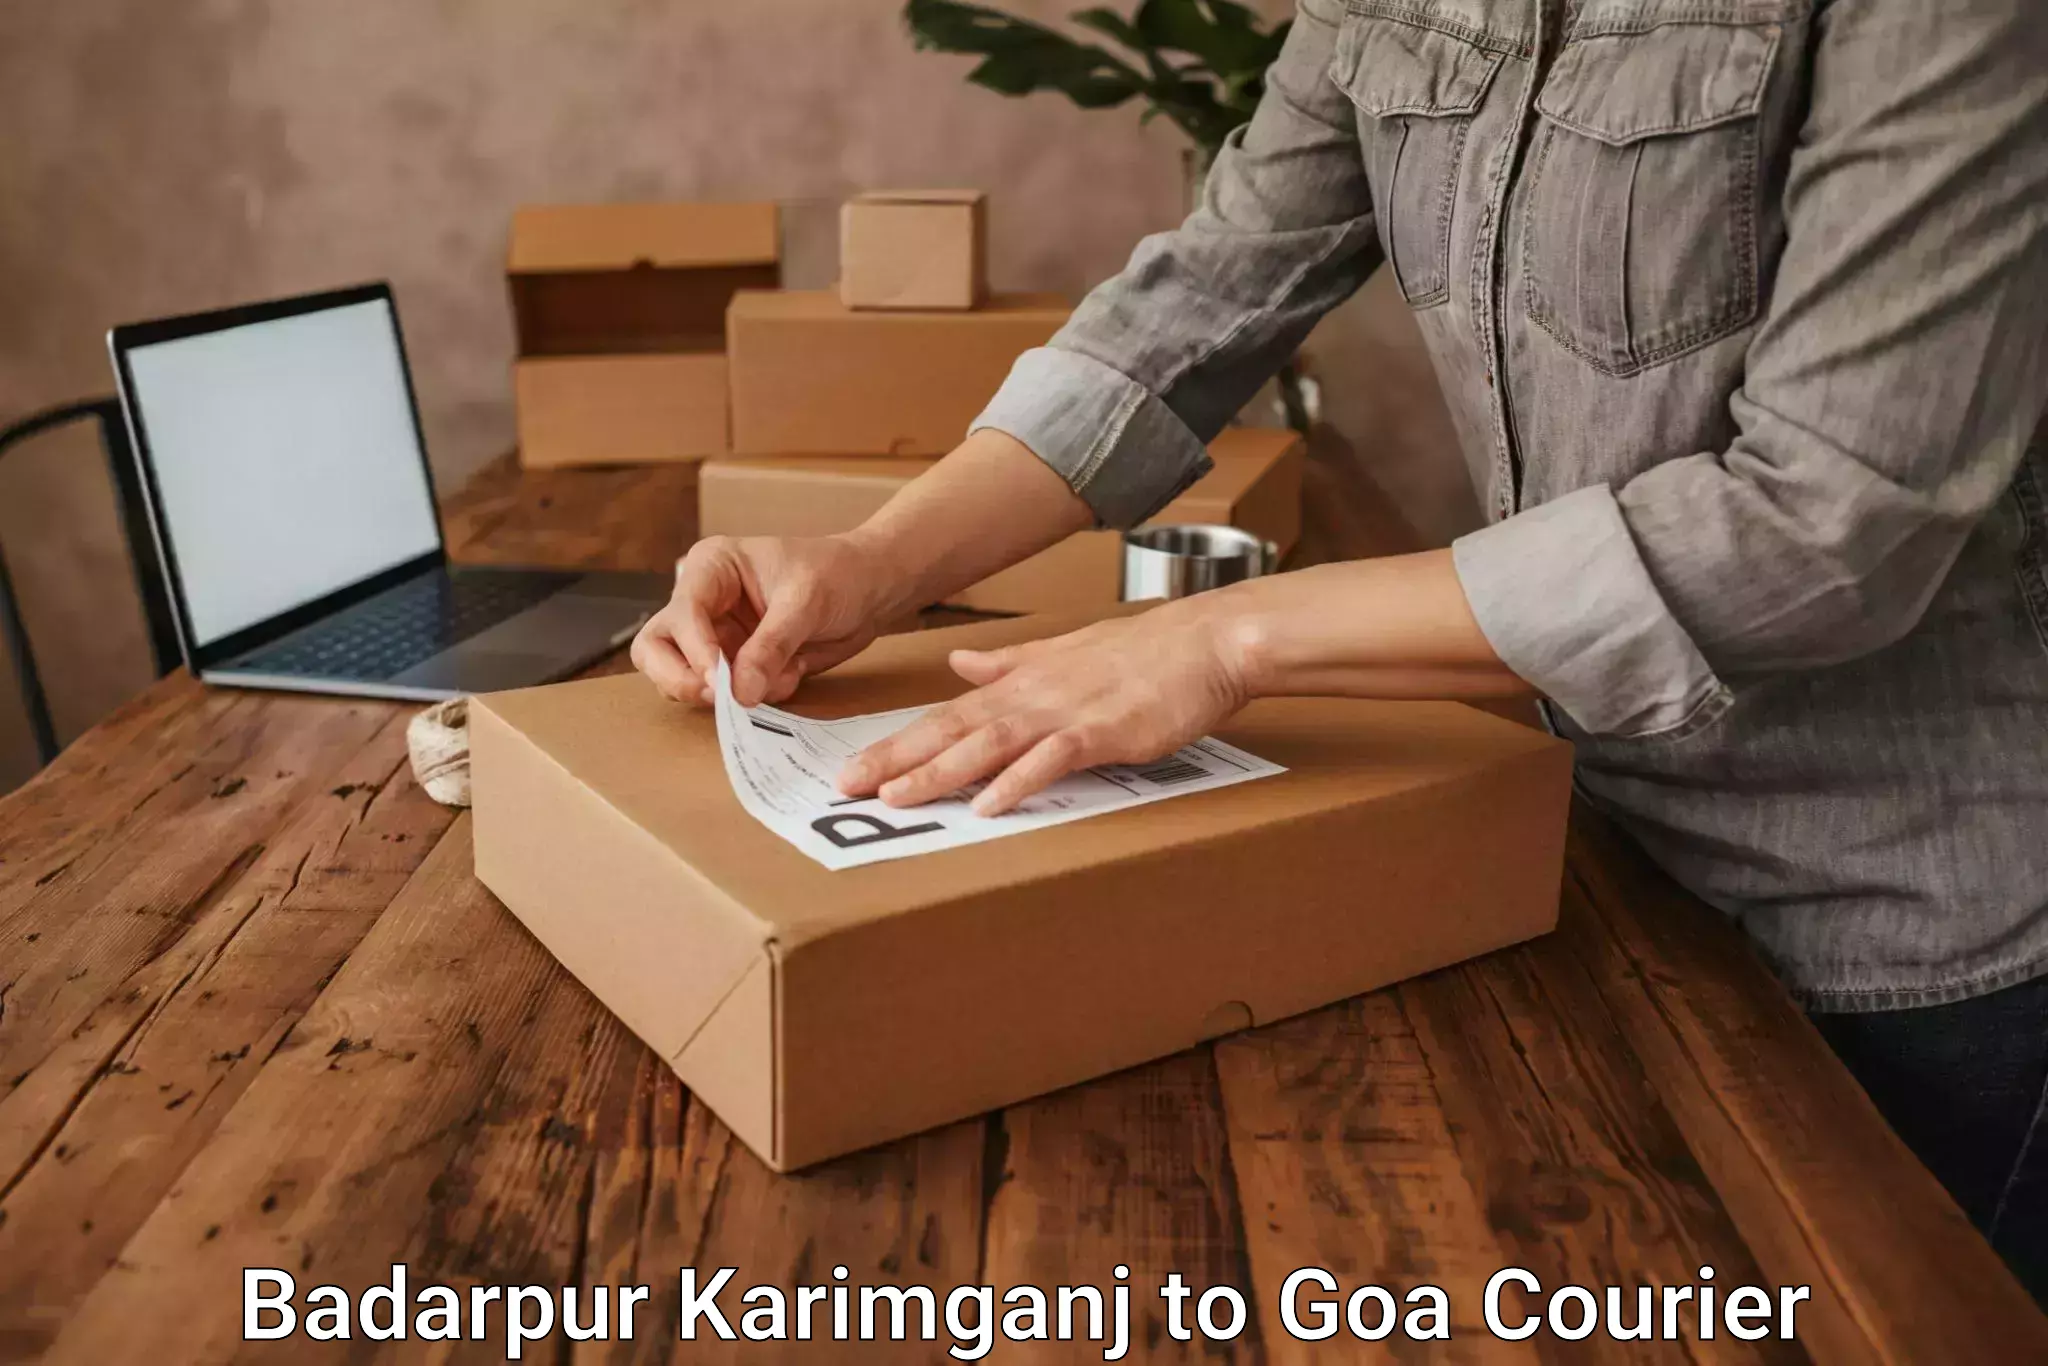 User-friendly courier app Badarpur Karimganj to Goa